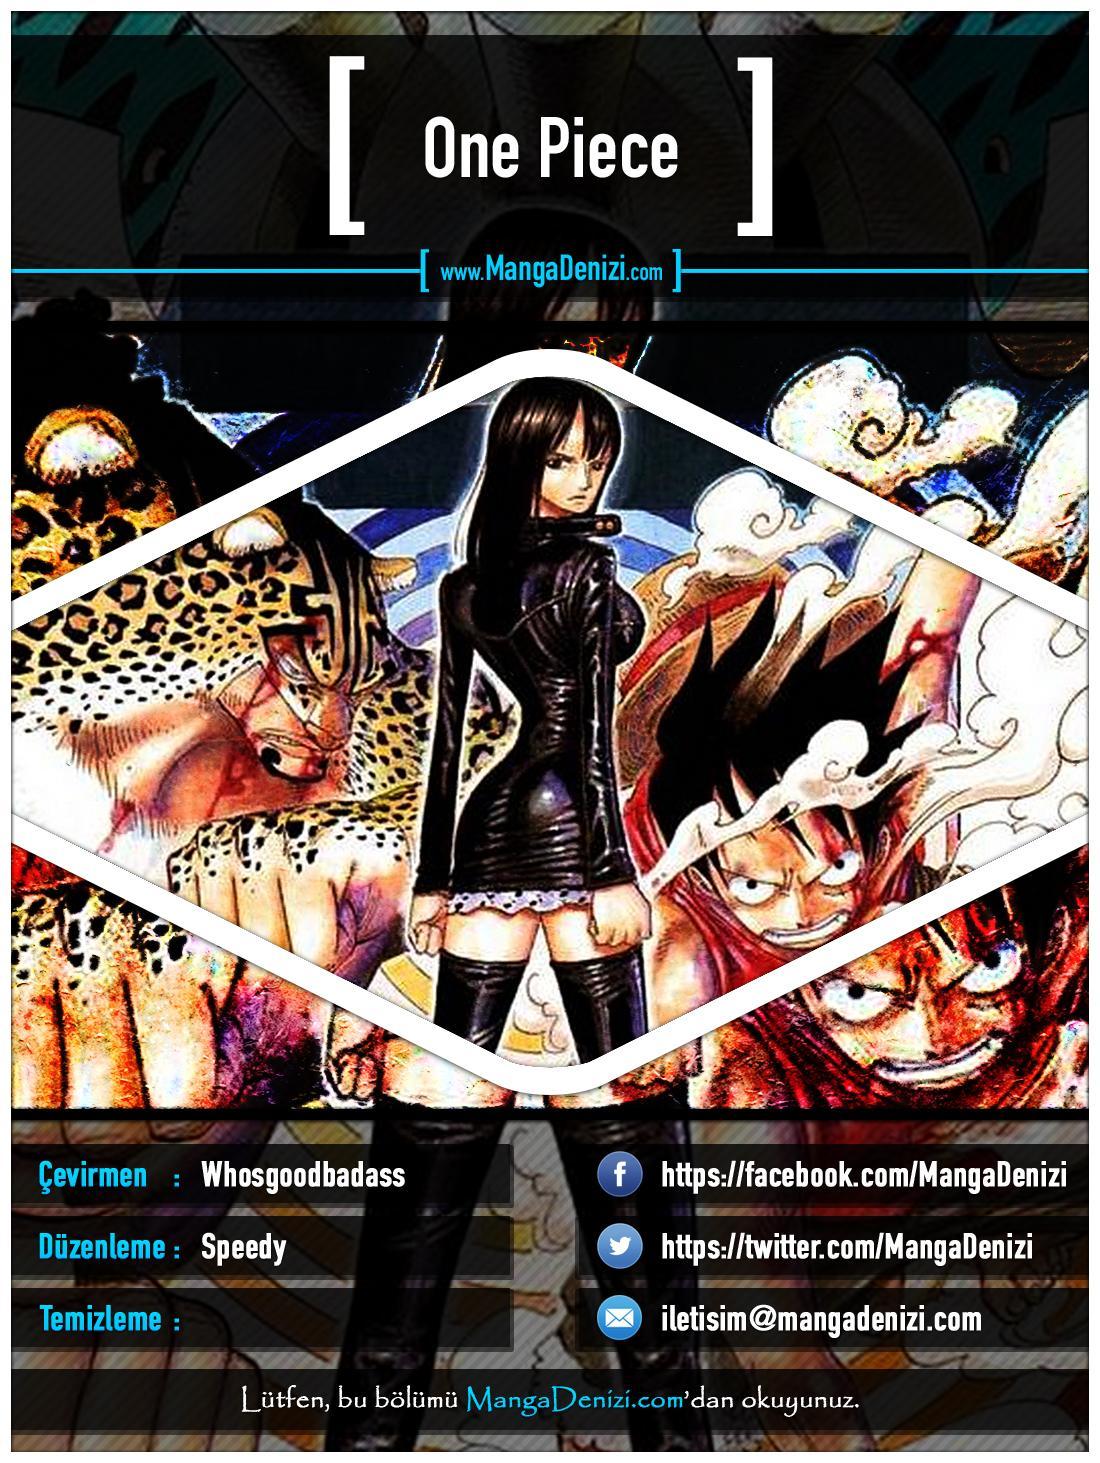 One Piece [Renkli] mangasının 0358 bölümünün 1. sayfasını okuyorsunuz.